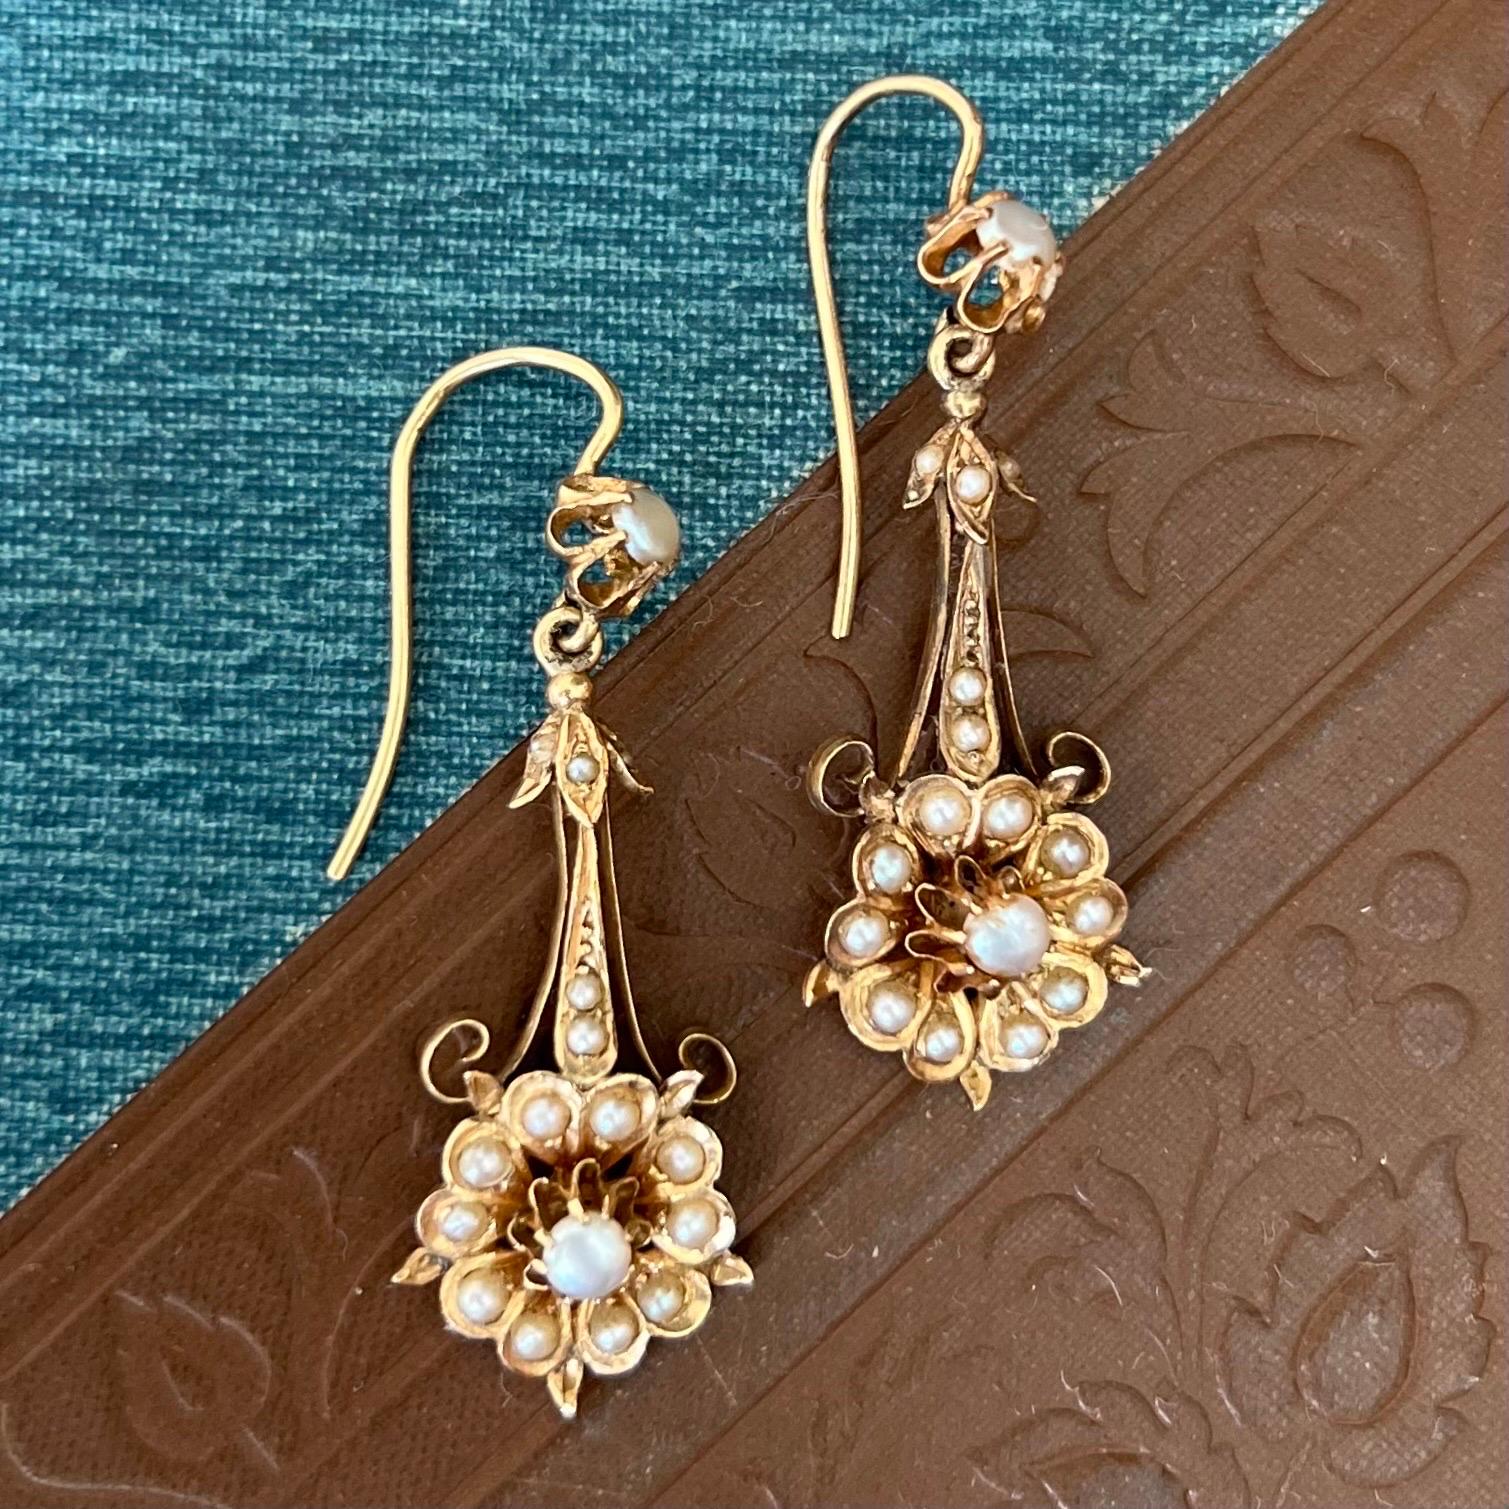 Ces boucles d'oreilles pendantes en or 14 carats de la fin du XIXe siècle sont serties de dix-sept perles rondes. Les boucles d'oreilles sont conçues comme une belle fleur avec des feuilles avec une structure de cadre articulée. La fleur est ornée